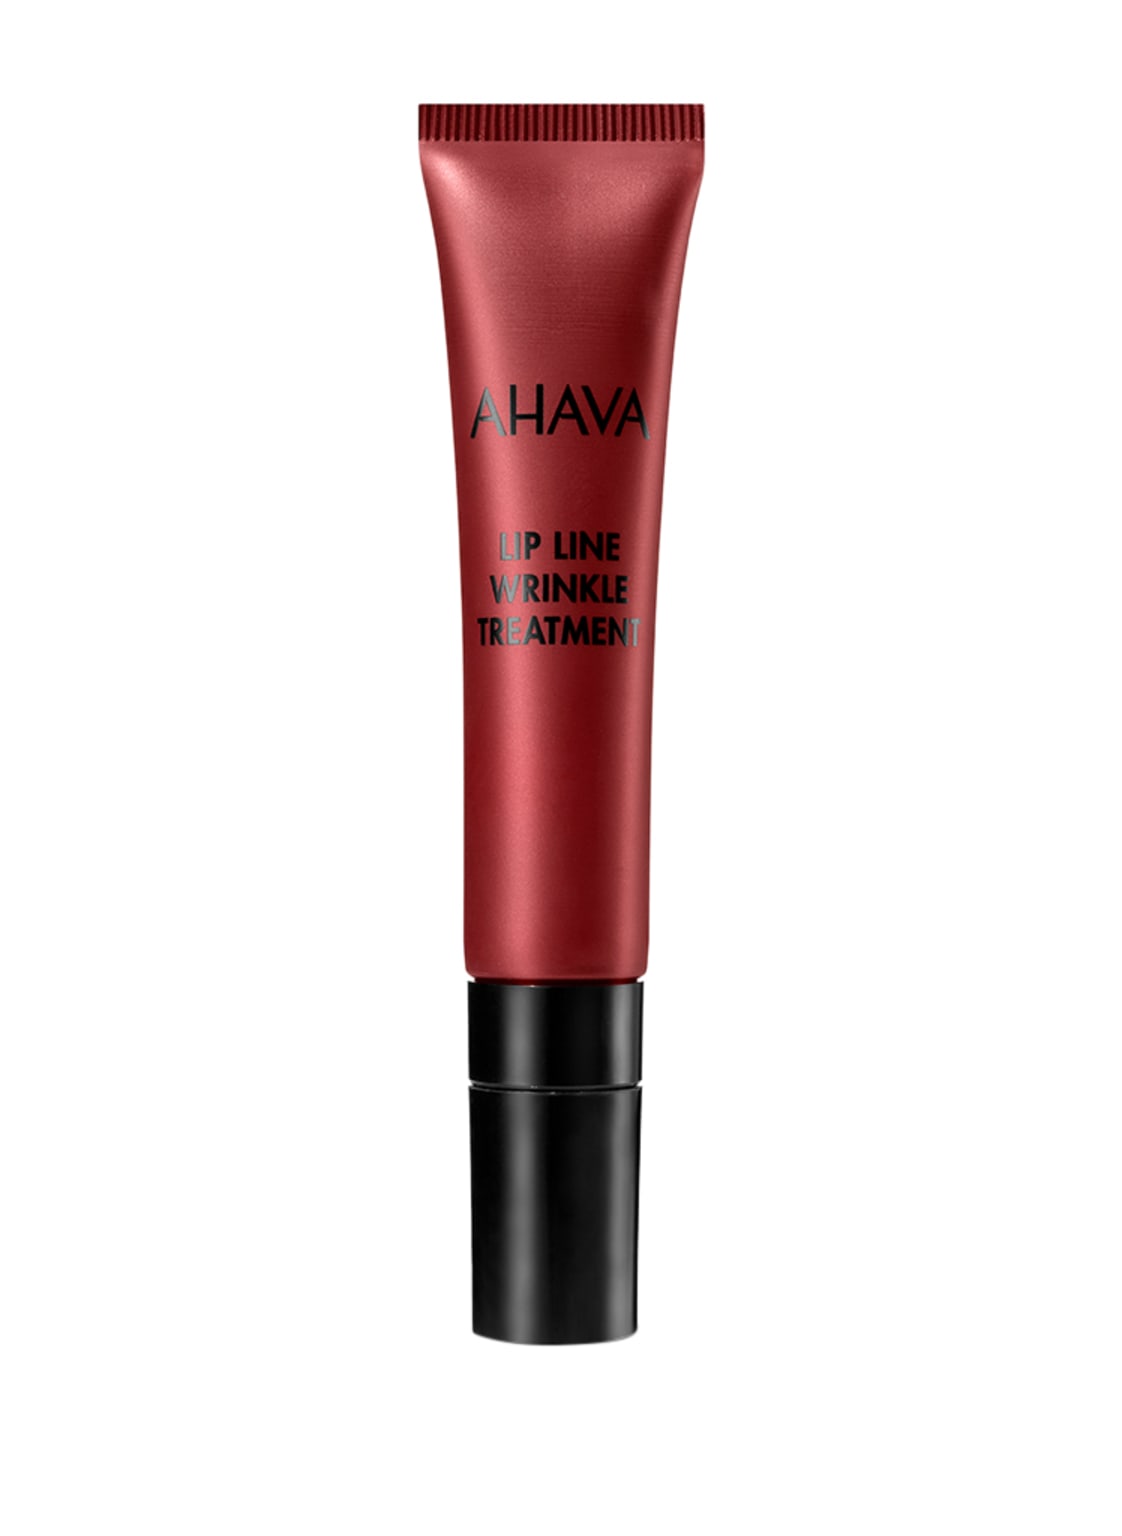 Image of Ahava Lip Line Wrinkle Treatment Lippenpflege 15 ml